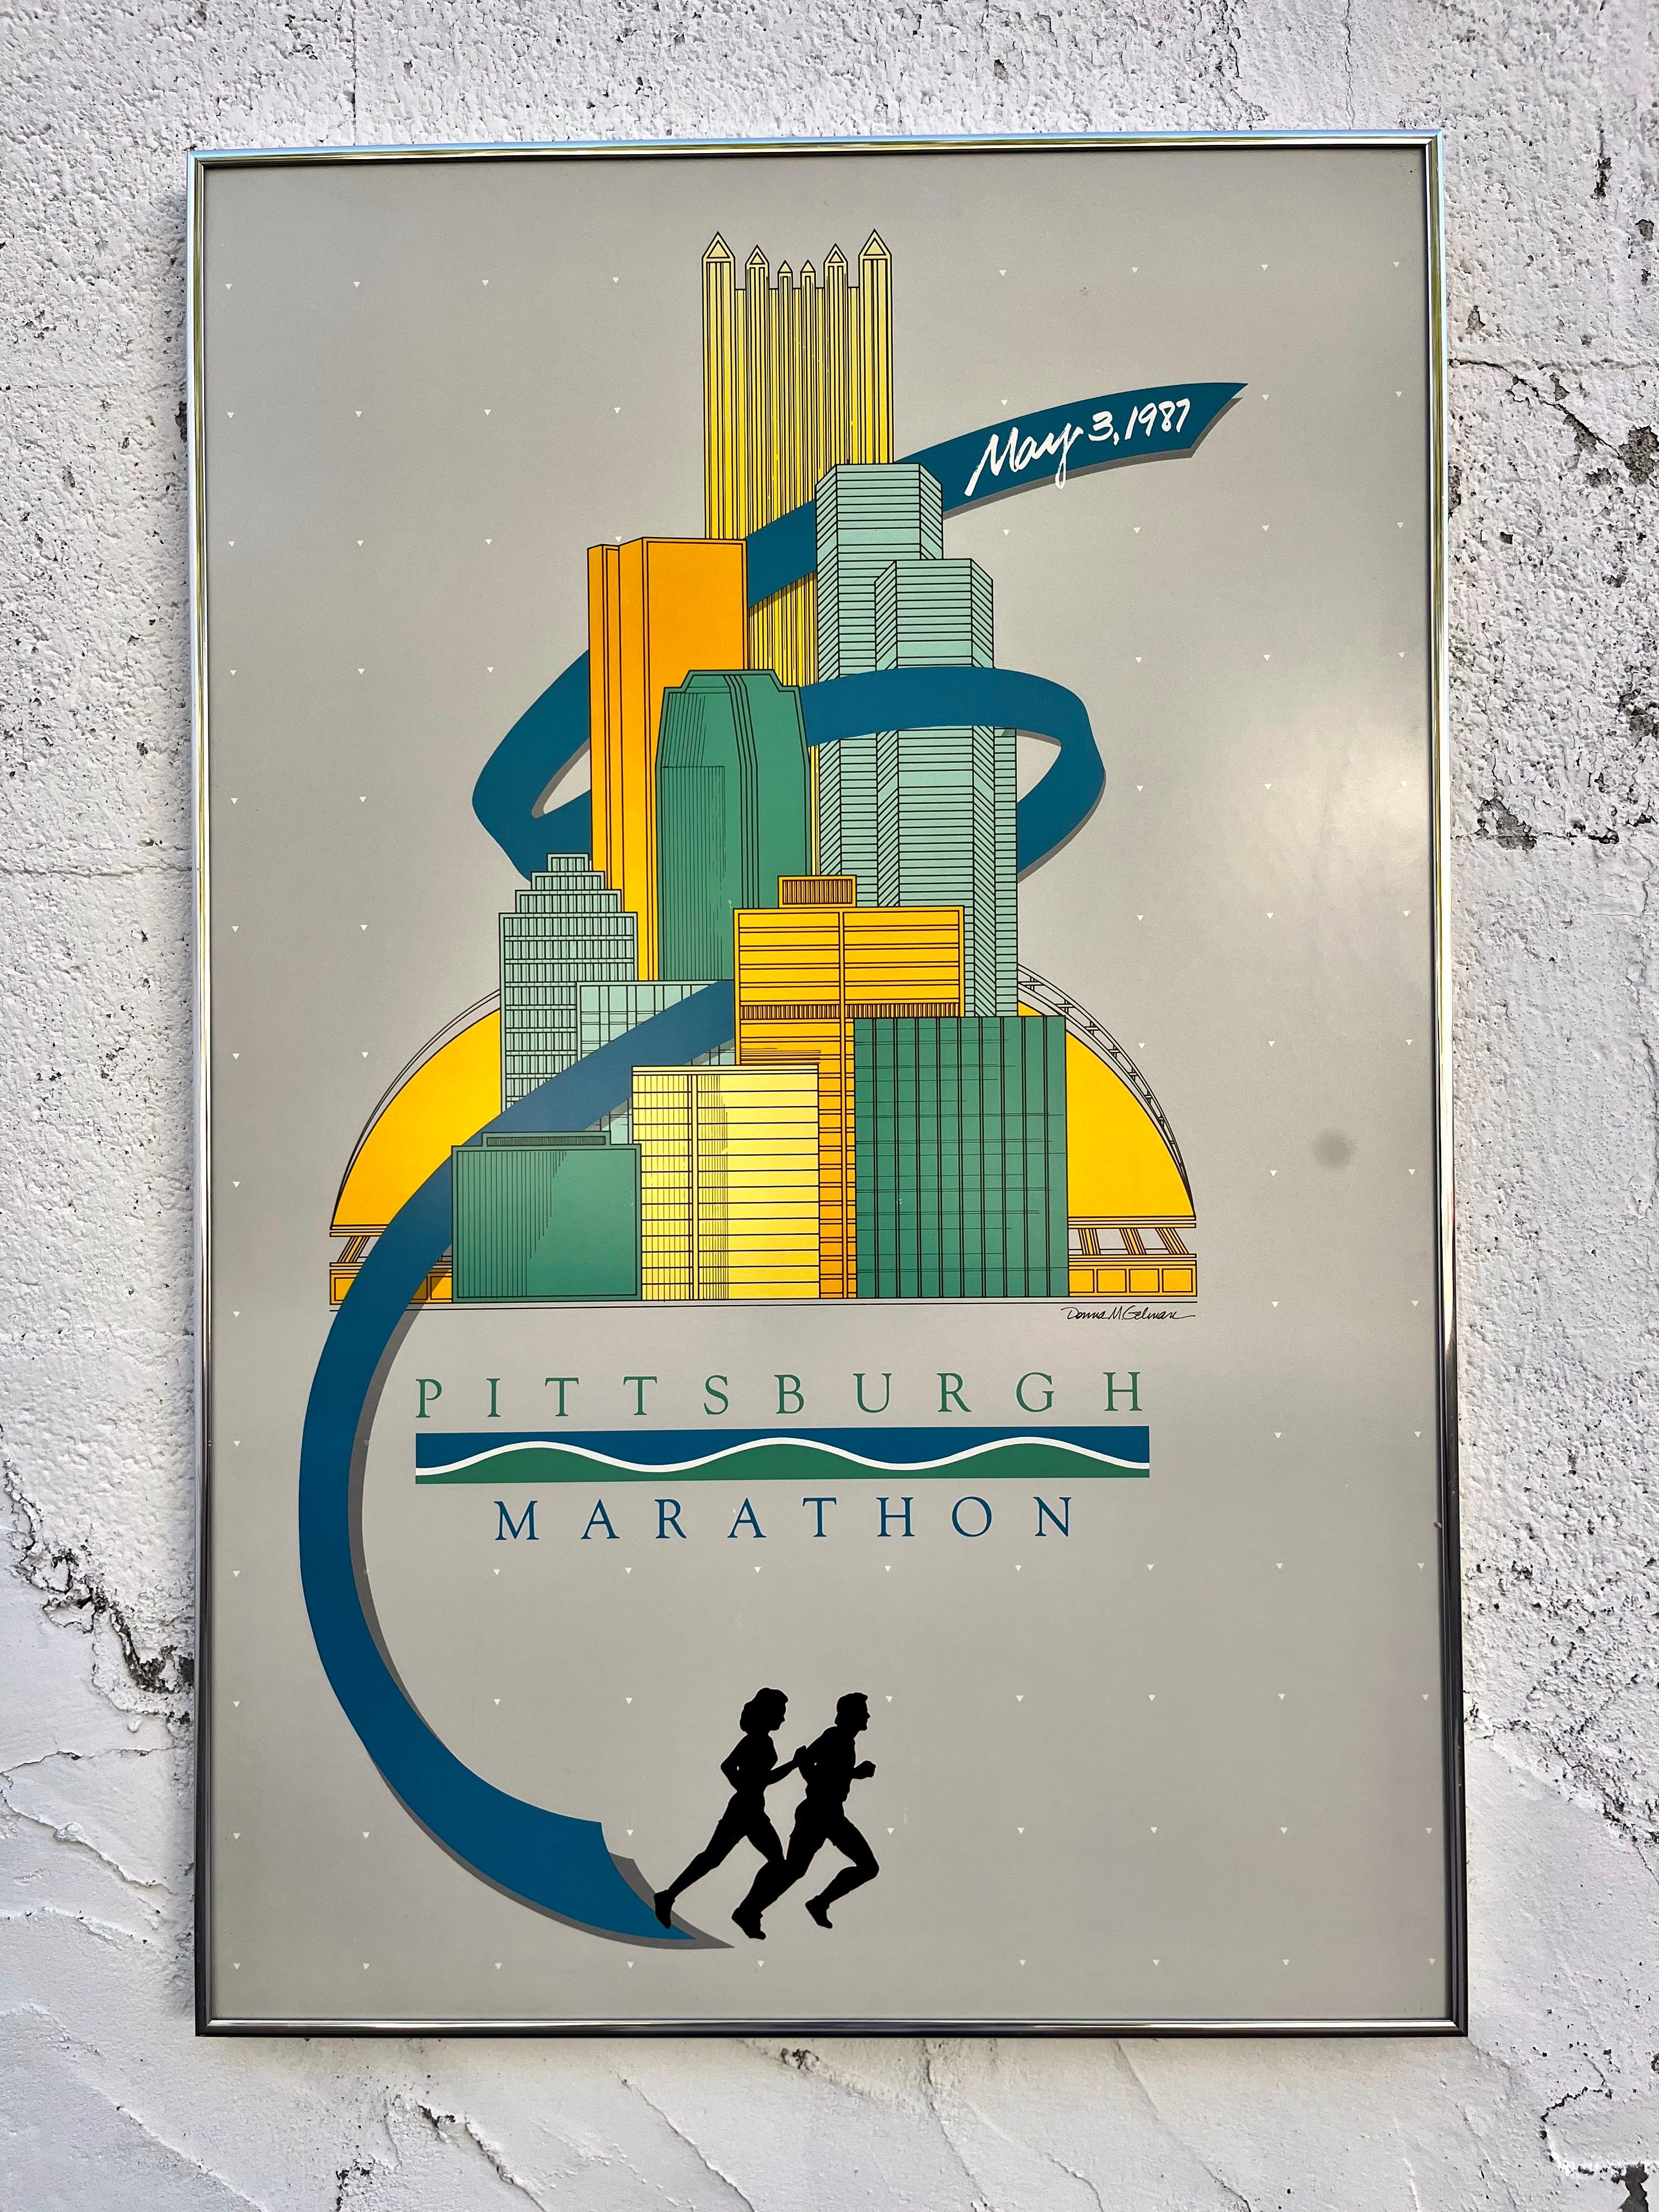 Original 1987 Pittsburgh Marathon Werbeplakat gerahmt von der amerikanischen Künstlerin Donna M Gelman. 
Mit einer modernistischen Illustration der Skyline von Pittsburgh vor einem stummen grauen Hintergrund. 
Gerahmt und zum Aufhängen bereit. 
In